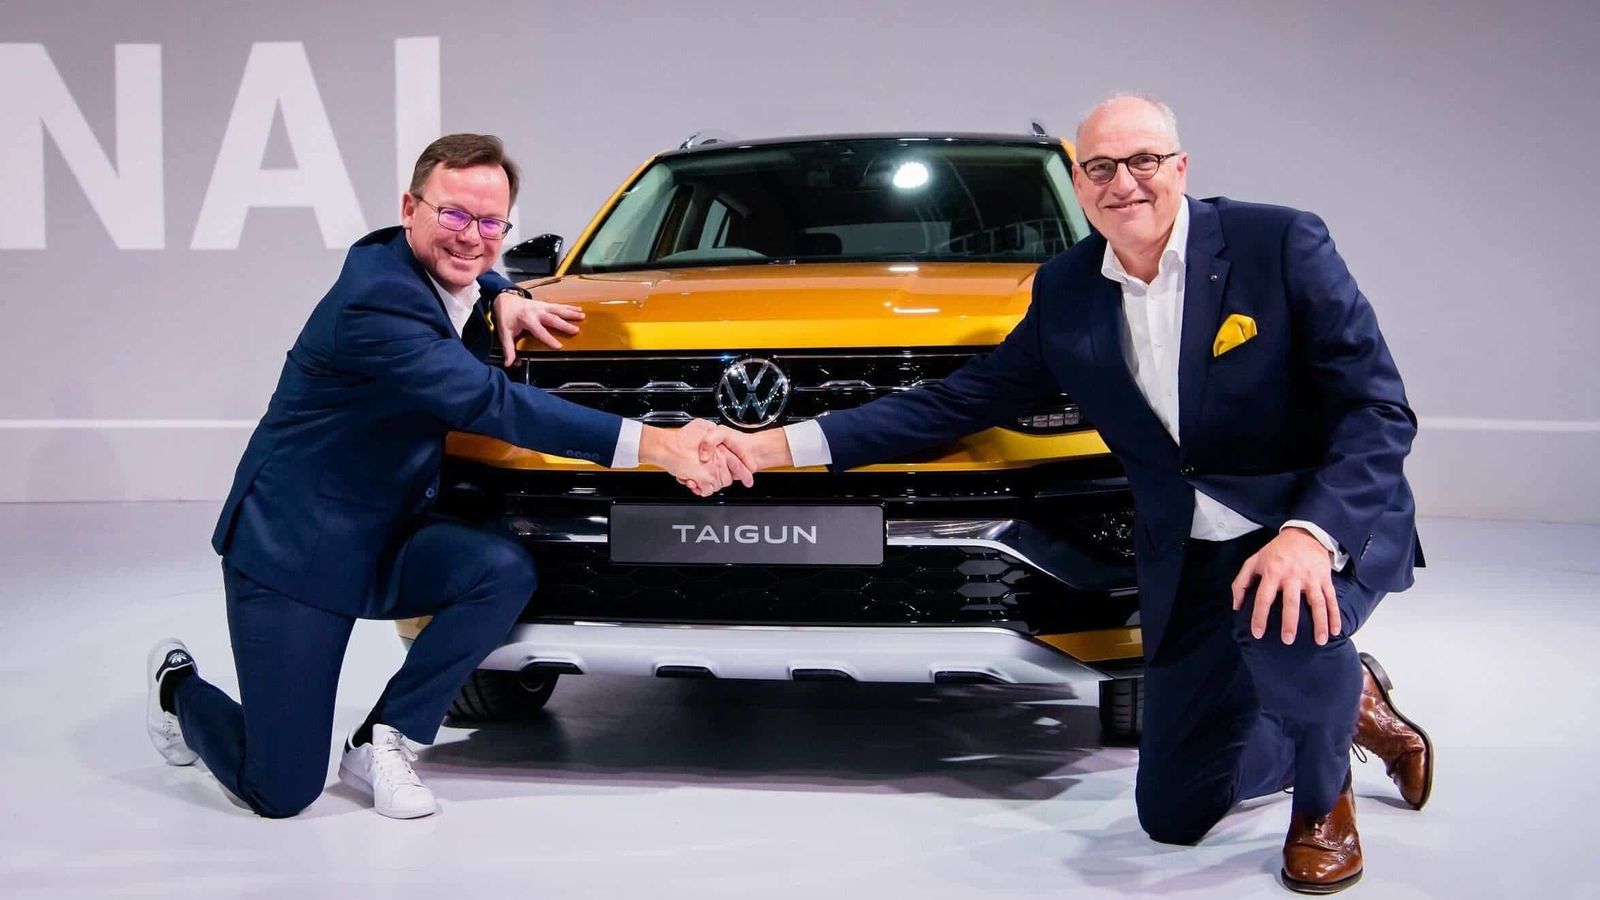 Volkswagen Tiguan Facelift Breaks Cover; India Launch Expected In